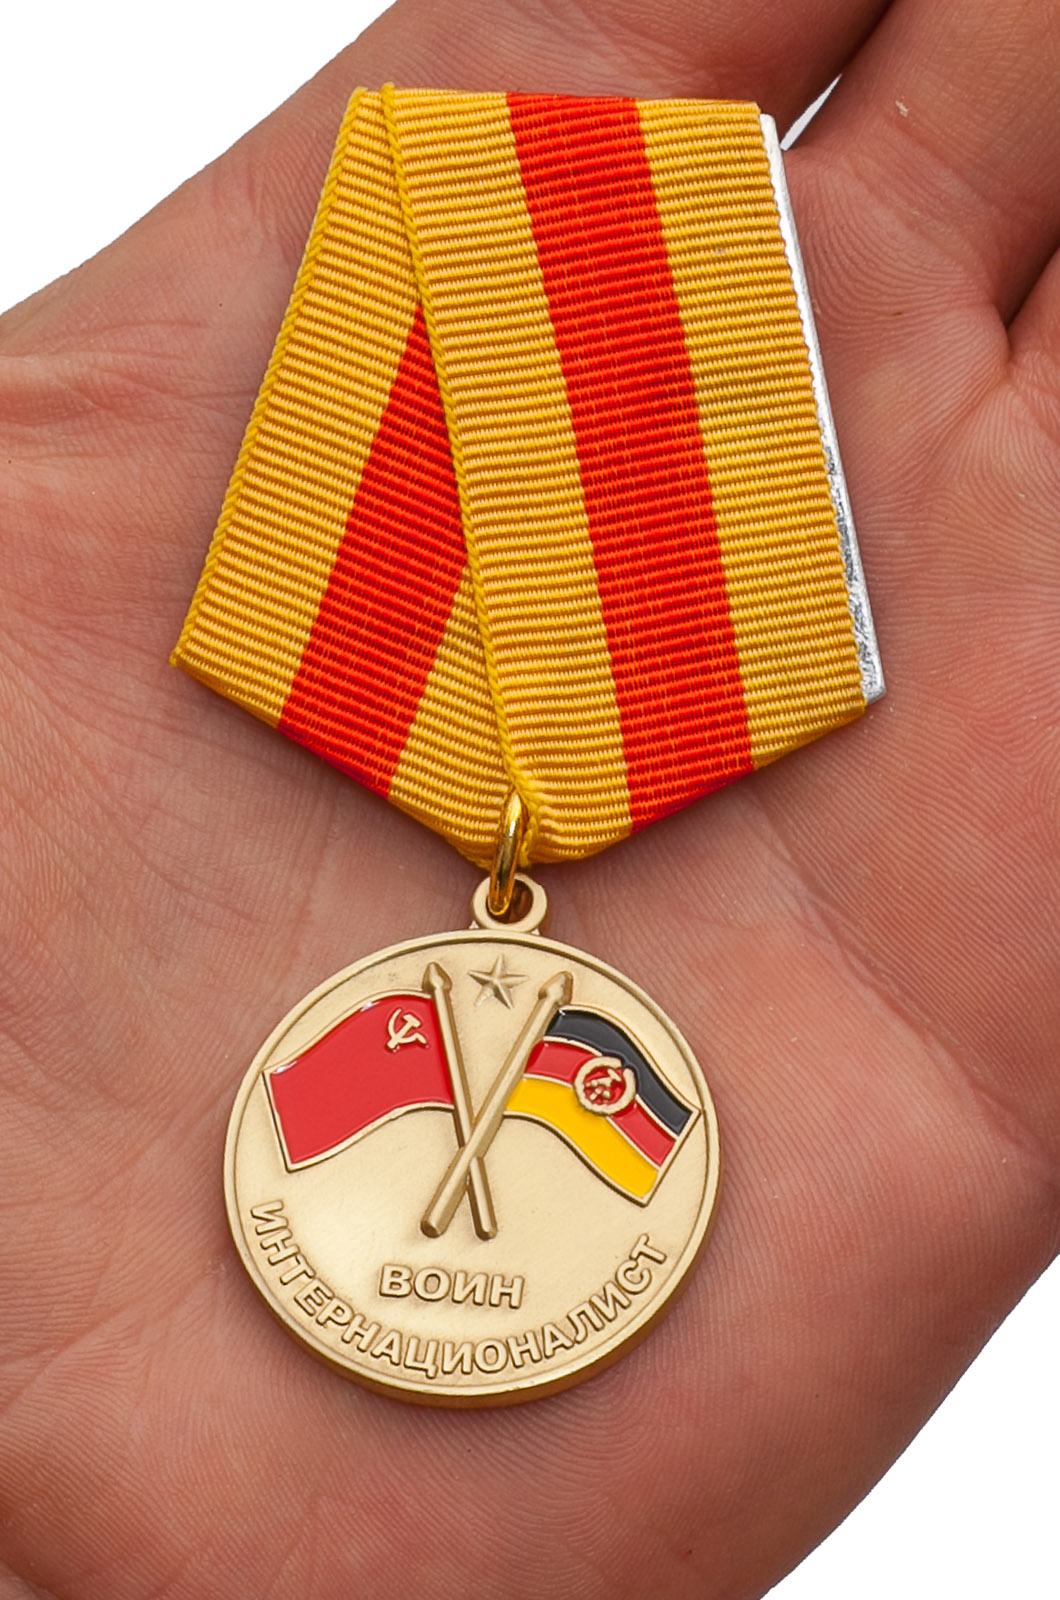 Медаль "Воин интернационалист" (В память о службе в ГДР)  